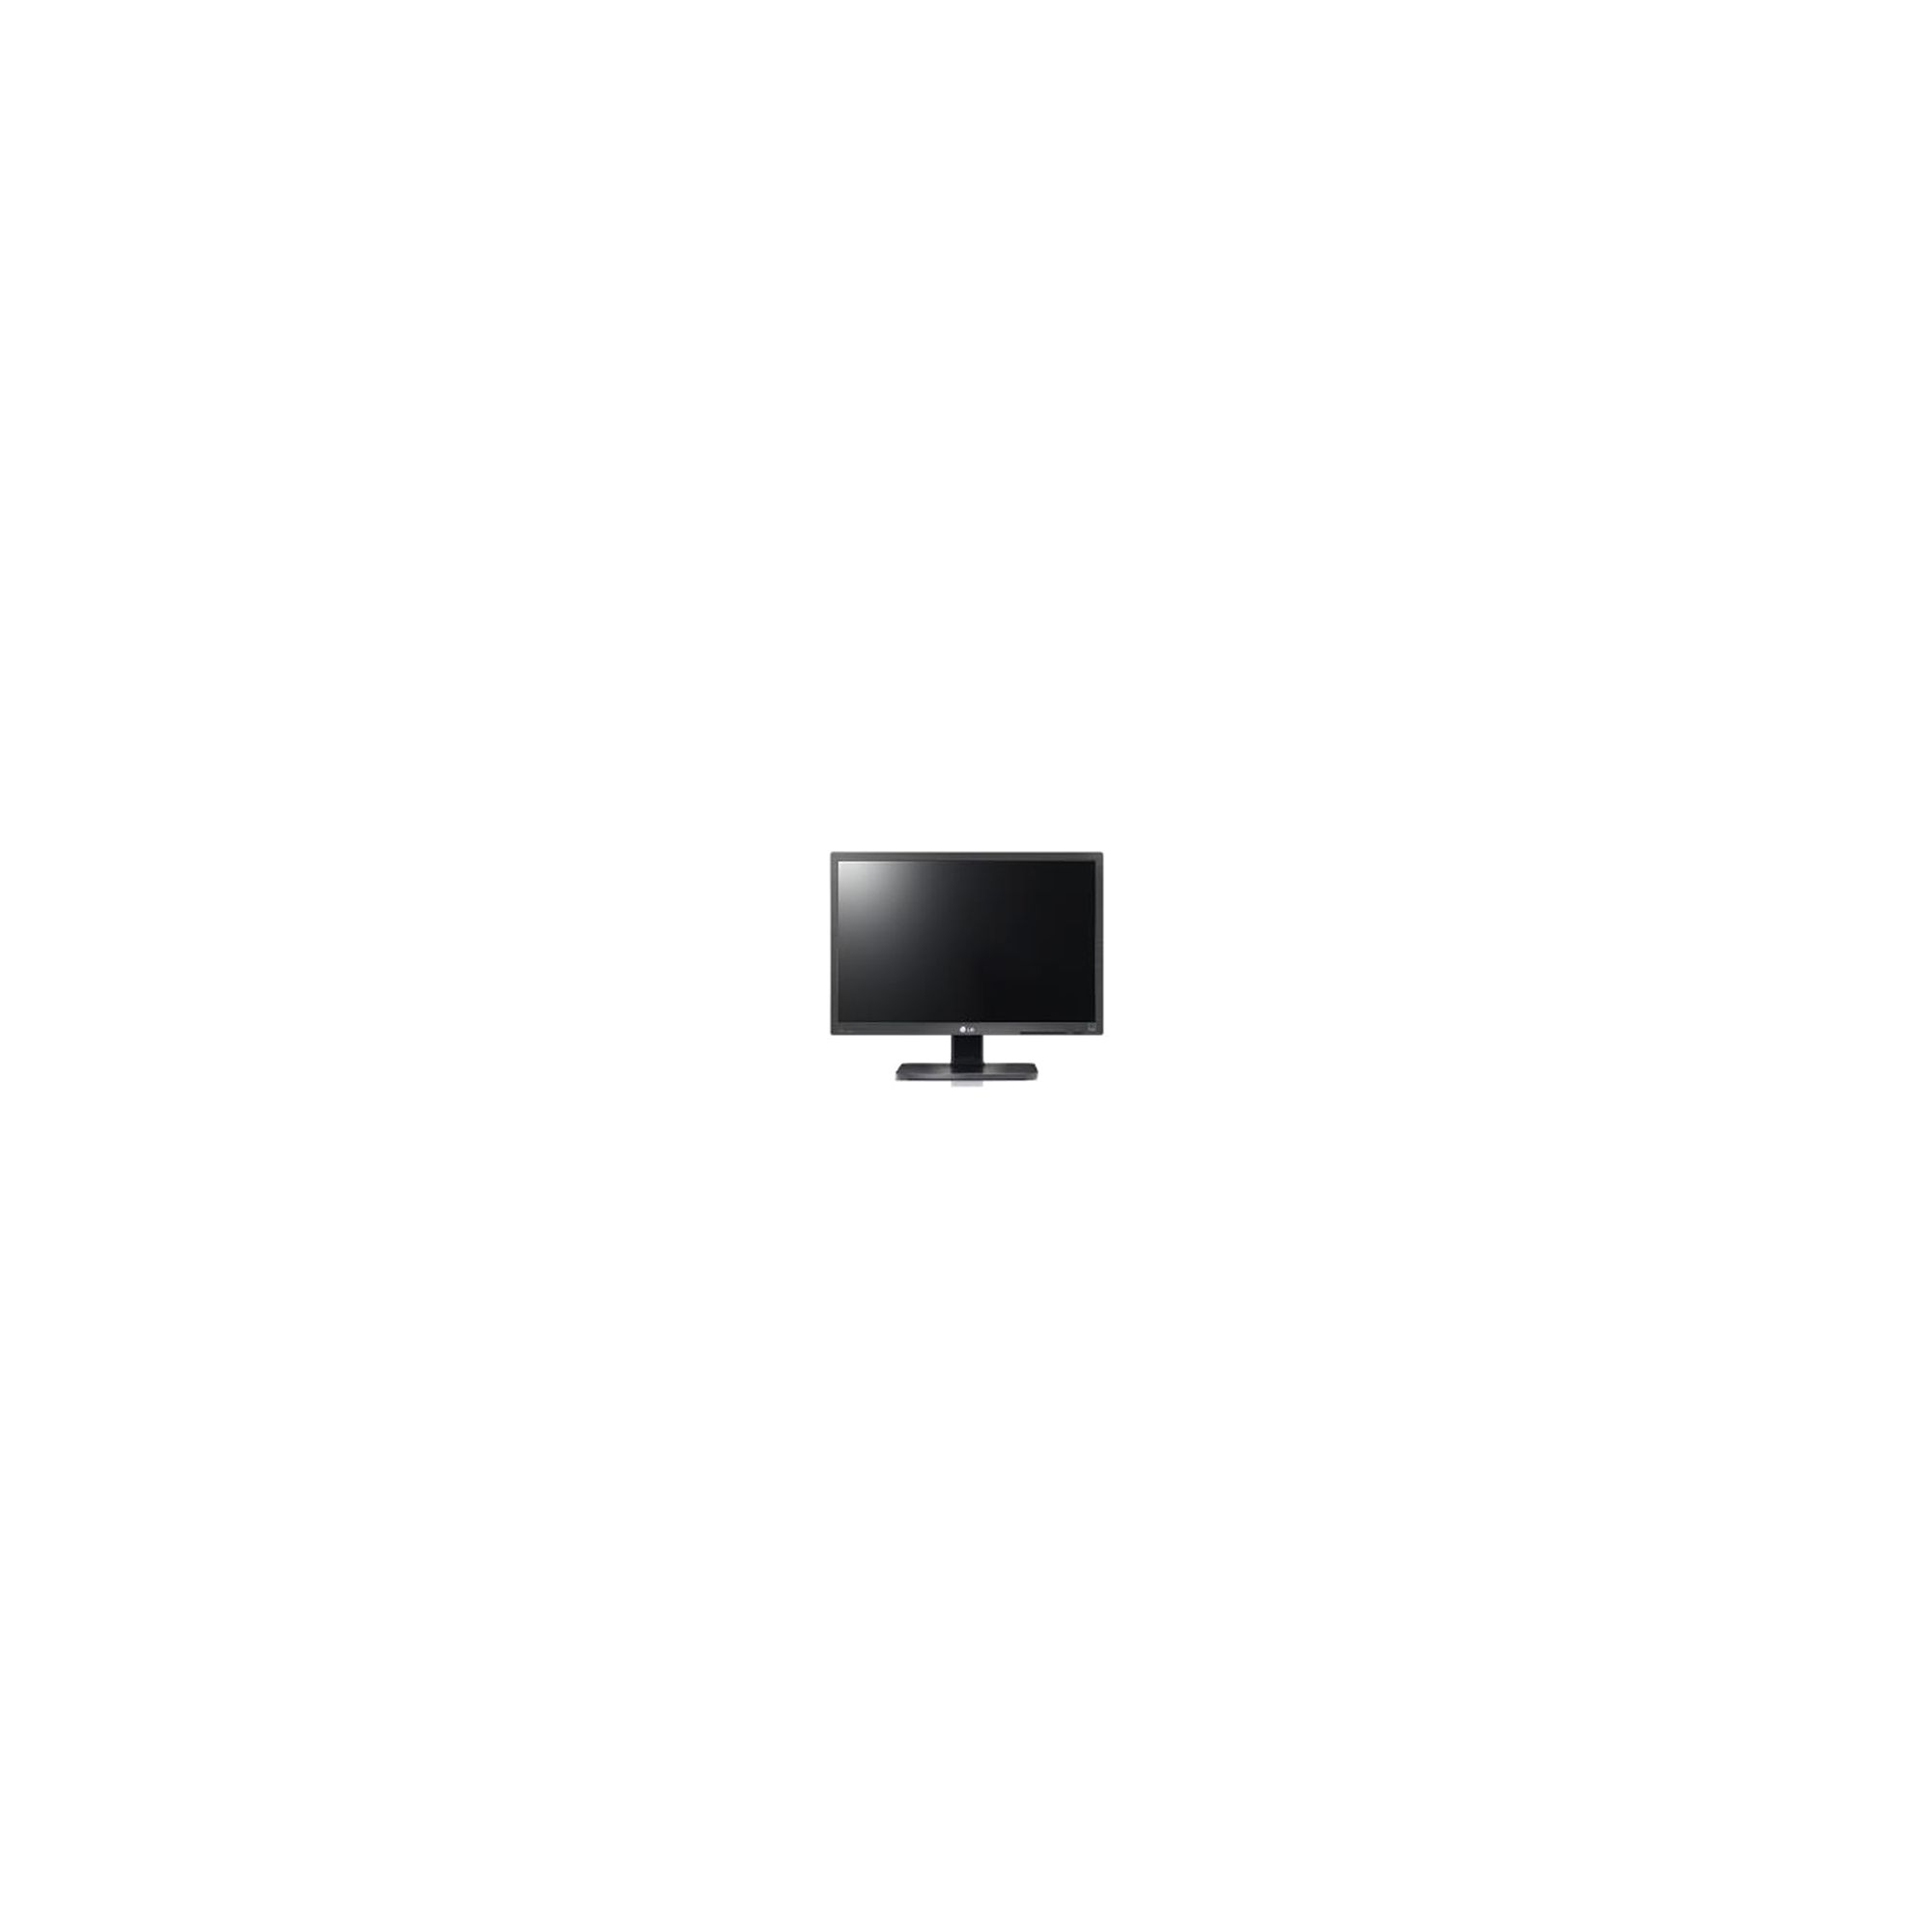 LG 22in LED Monitor TV 1920 x 1080 Full HD 16:9 2 x 5W Speakers Black Bezel VESA 75x75mm Wall Mount.